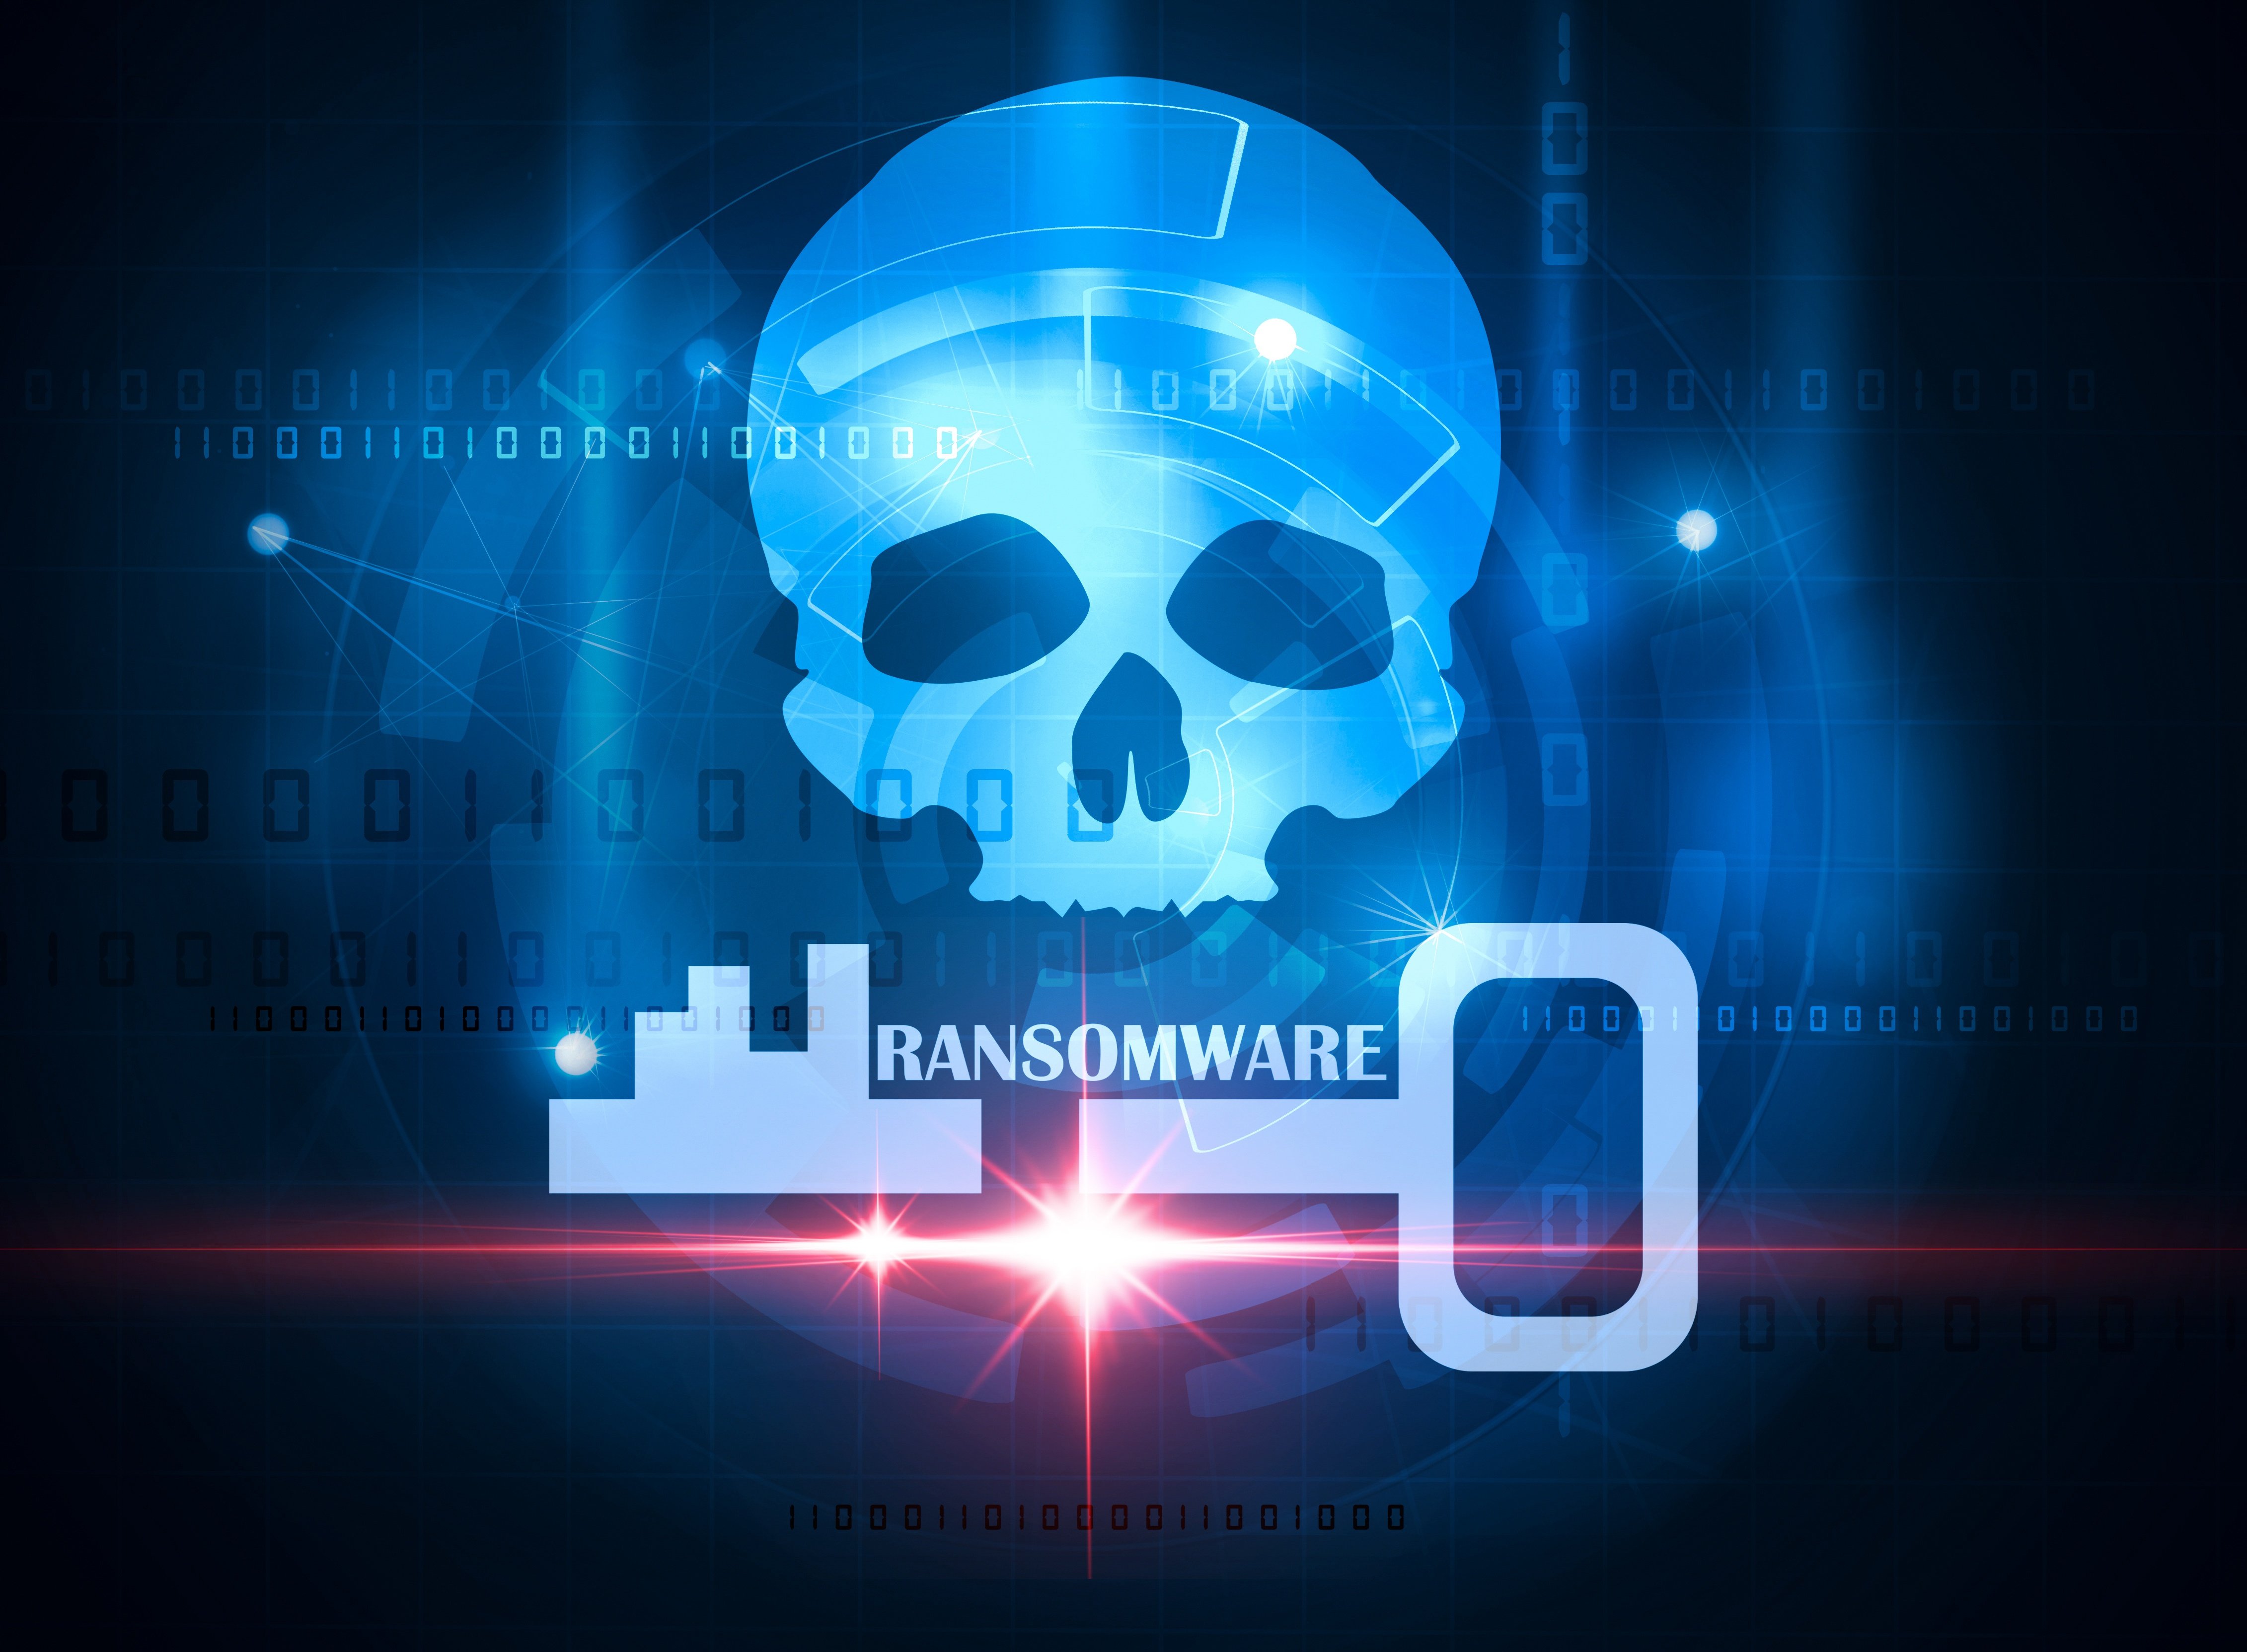 rasomware_malware_ciberataques.jpg